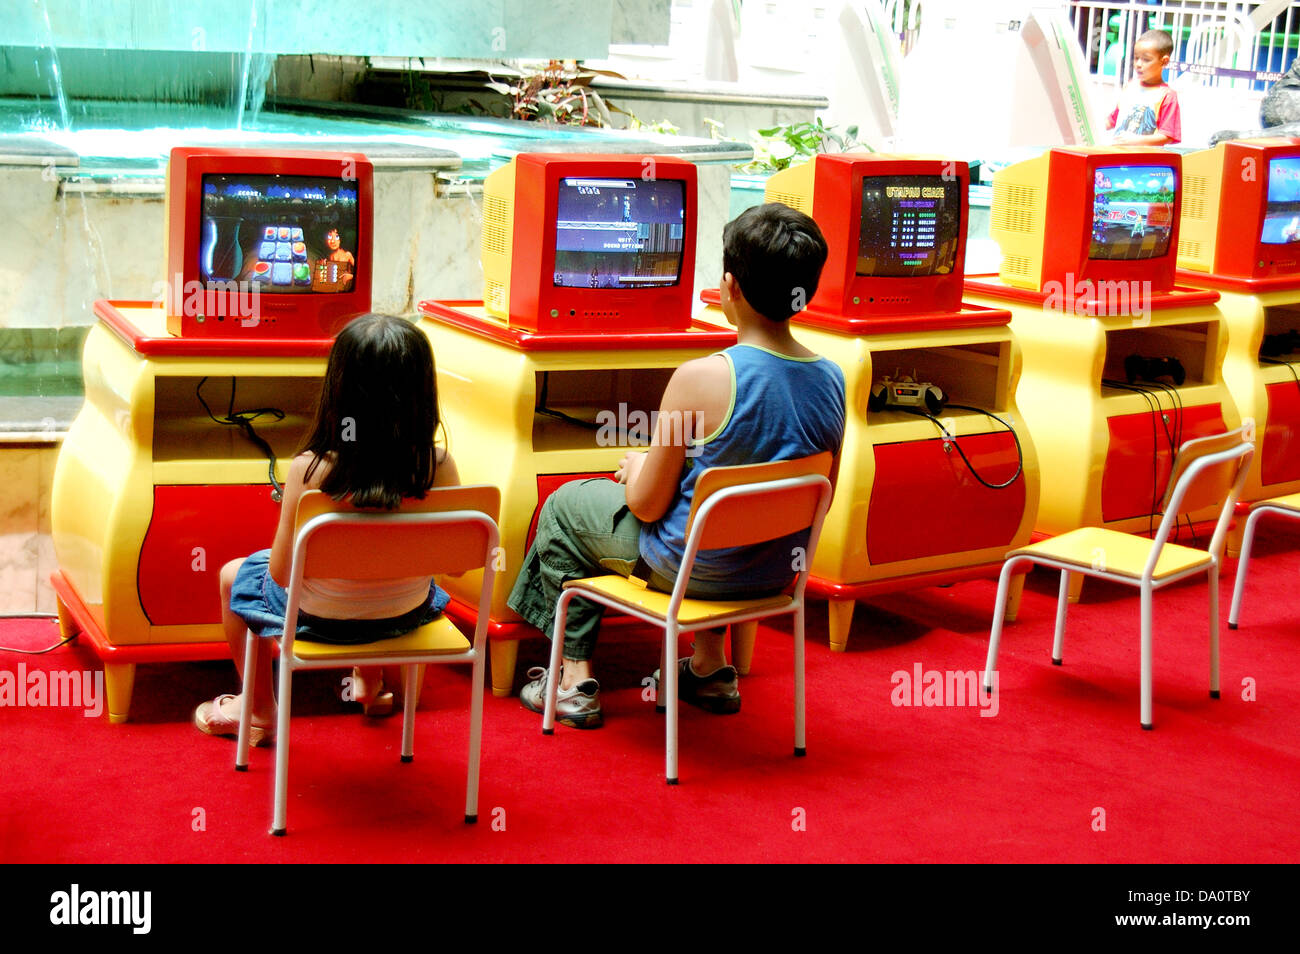 Kinder spielen Computer Spiele Keime ein Spielhaus in einem Einkaufszentrum Stockfoto